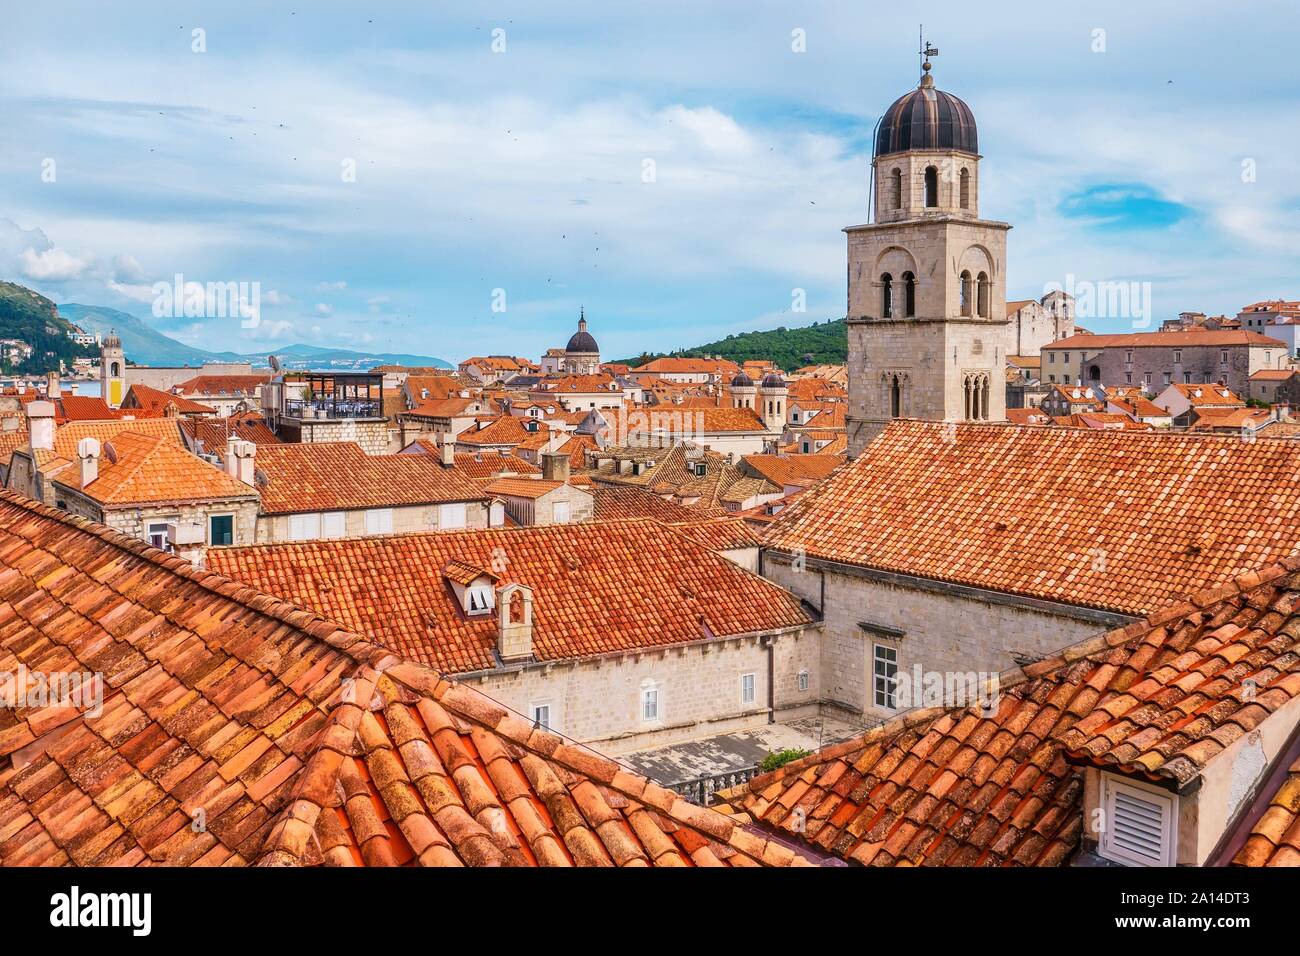 Angolo di alta vista delle piastrelle di colore arancione e la costruzione di tetti nella Città Vecchia di Dubrovnik in Croazia, con la parte superiore del suo caratteristico campanile visibile. Foto Stock